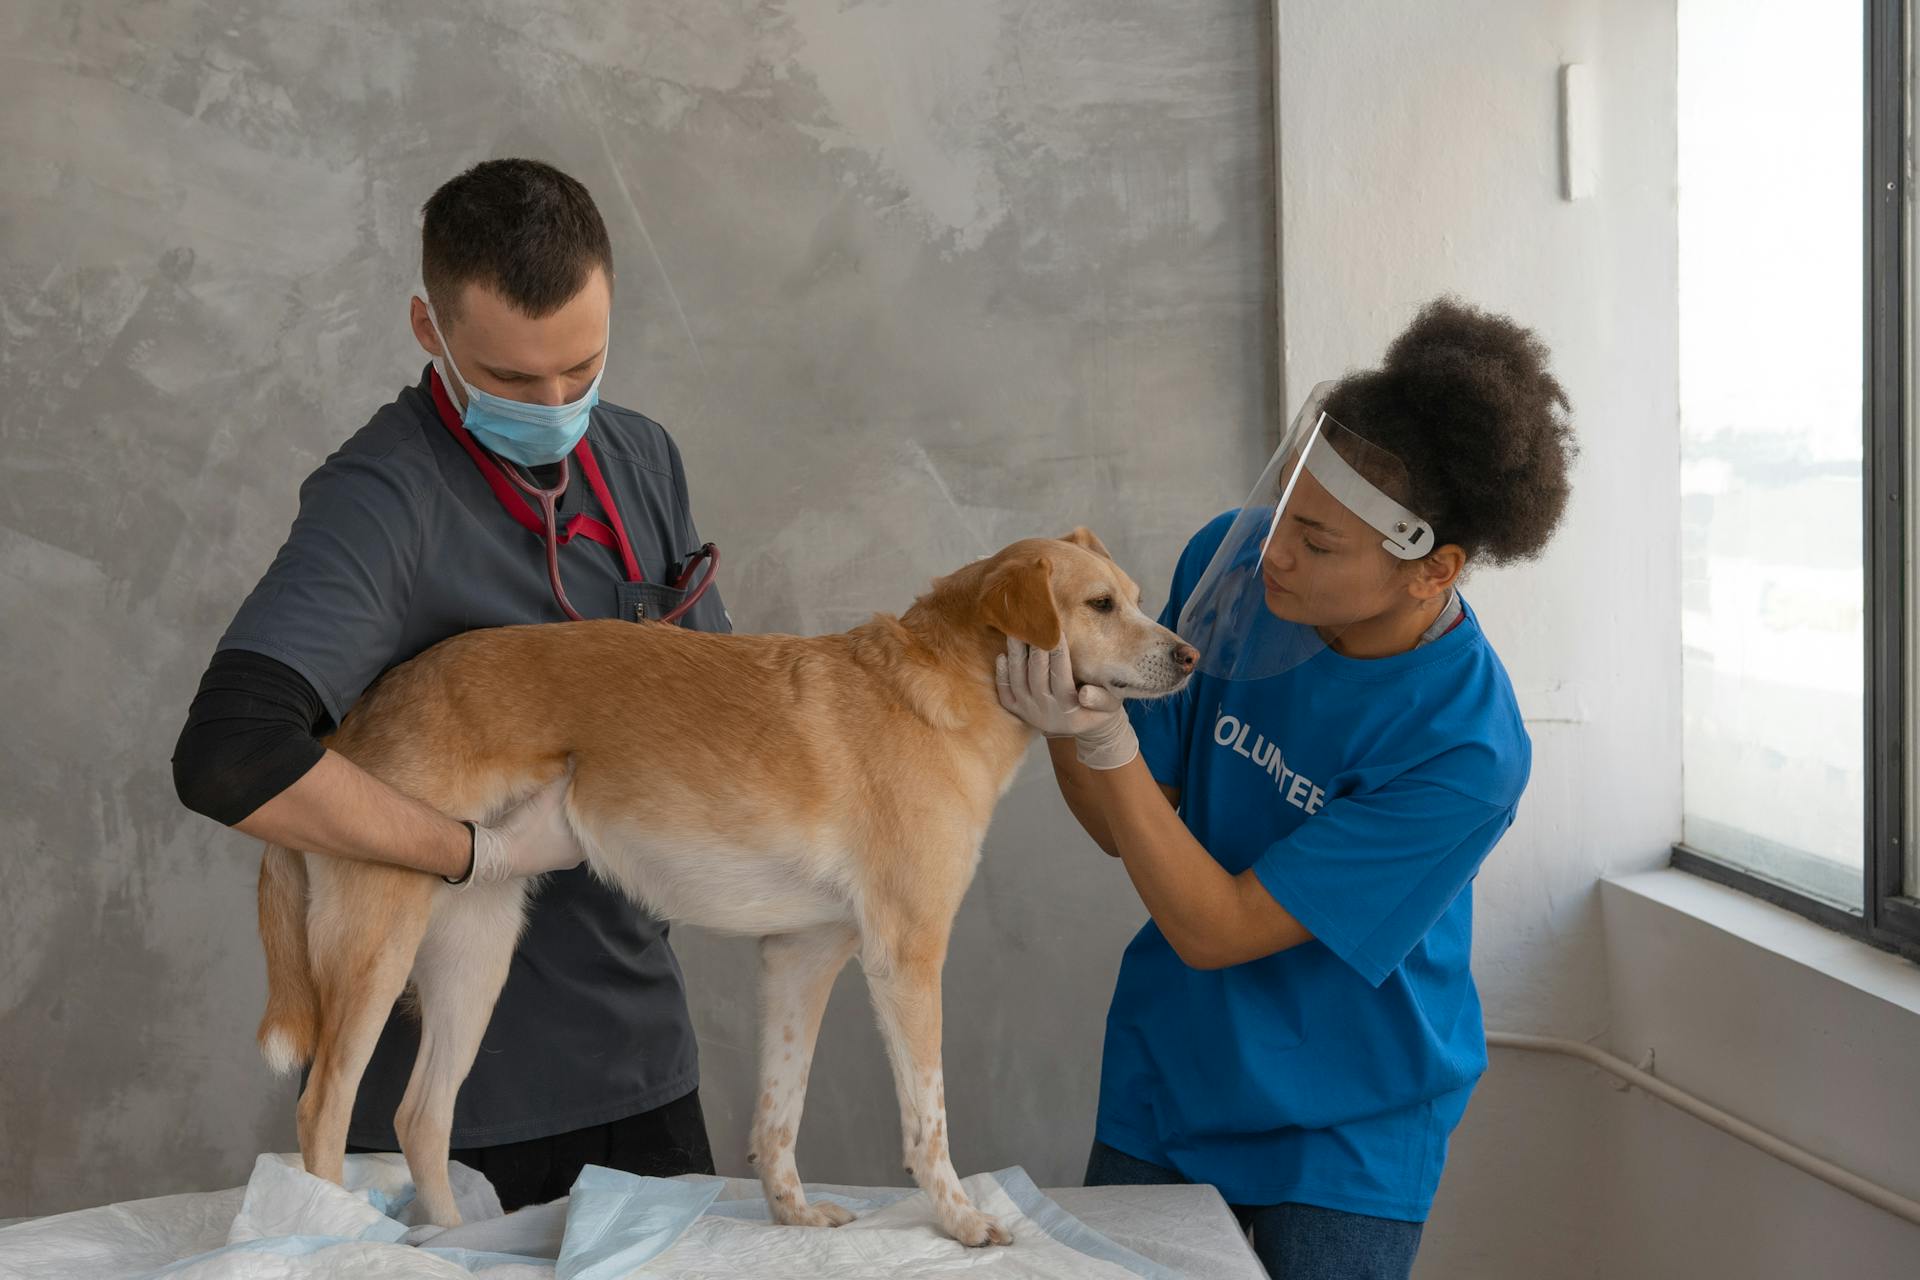 due veterinari sistemano il cane nella posizione migliore per l'inserimento del microchip